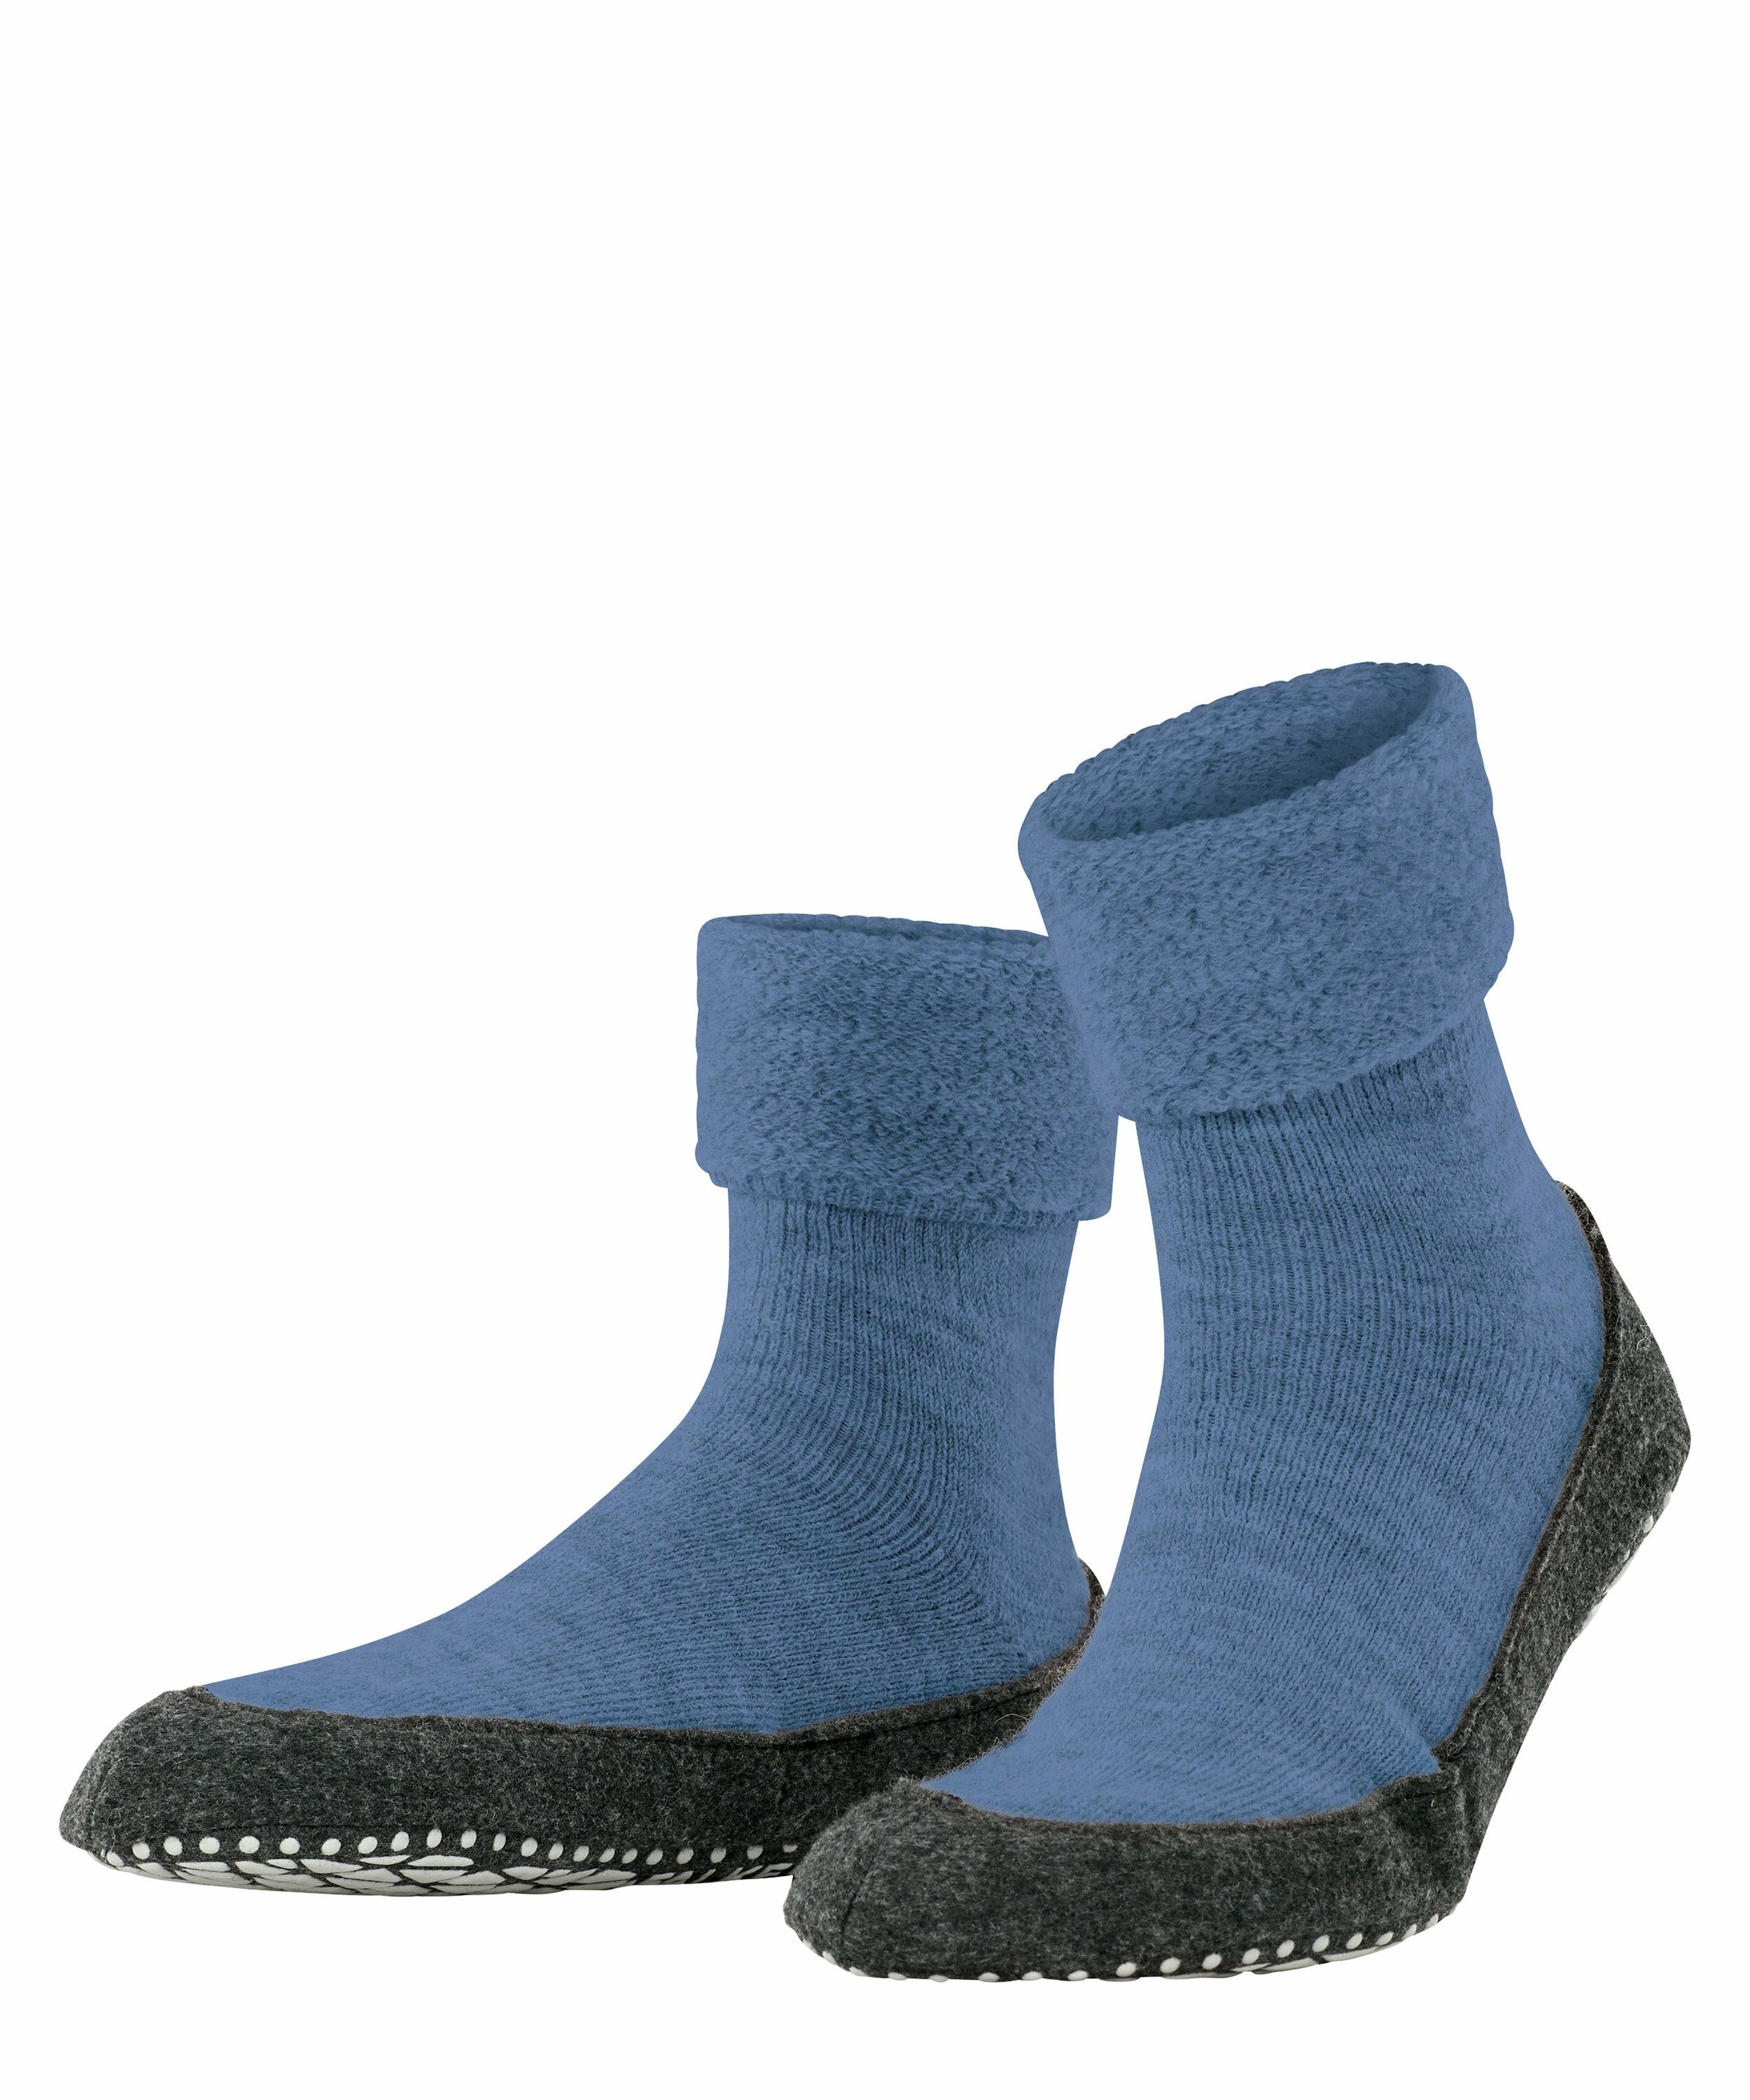 dusty FALKE Socken blue